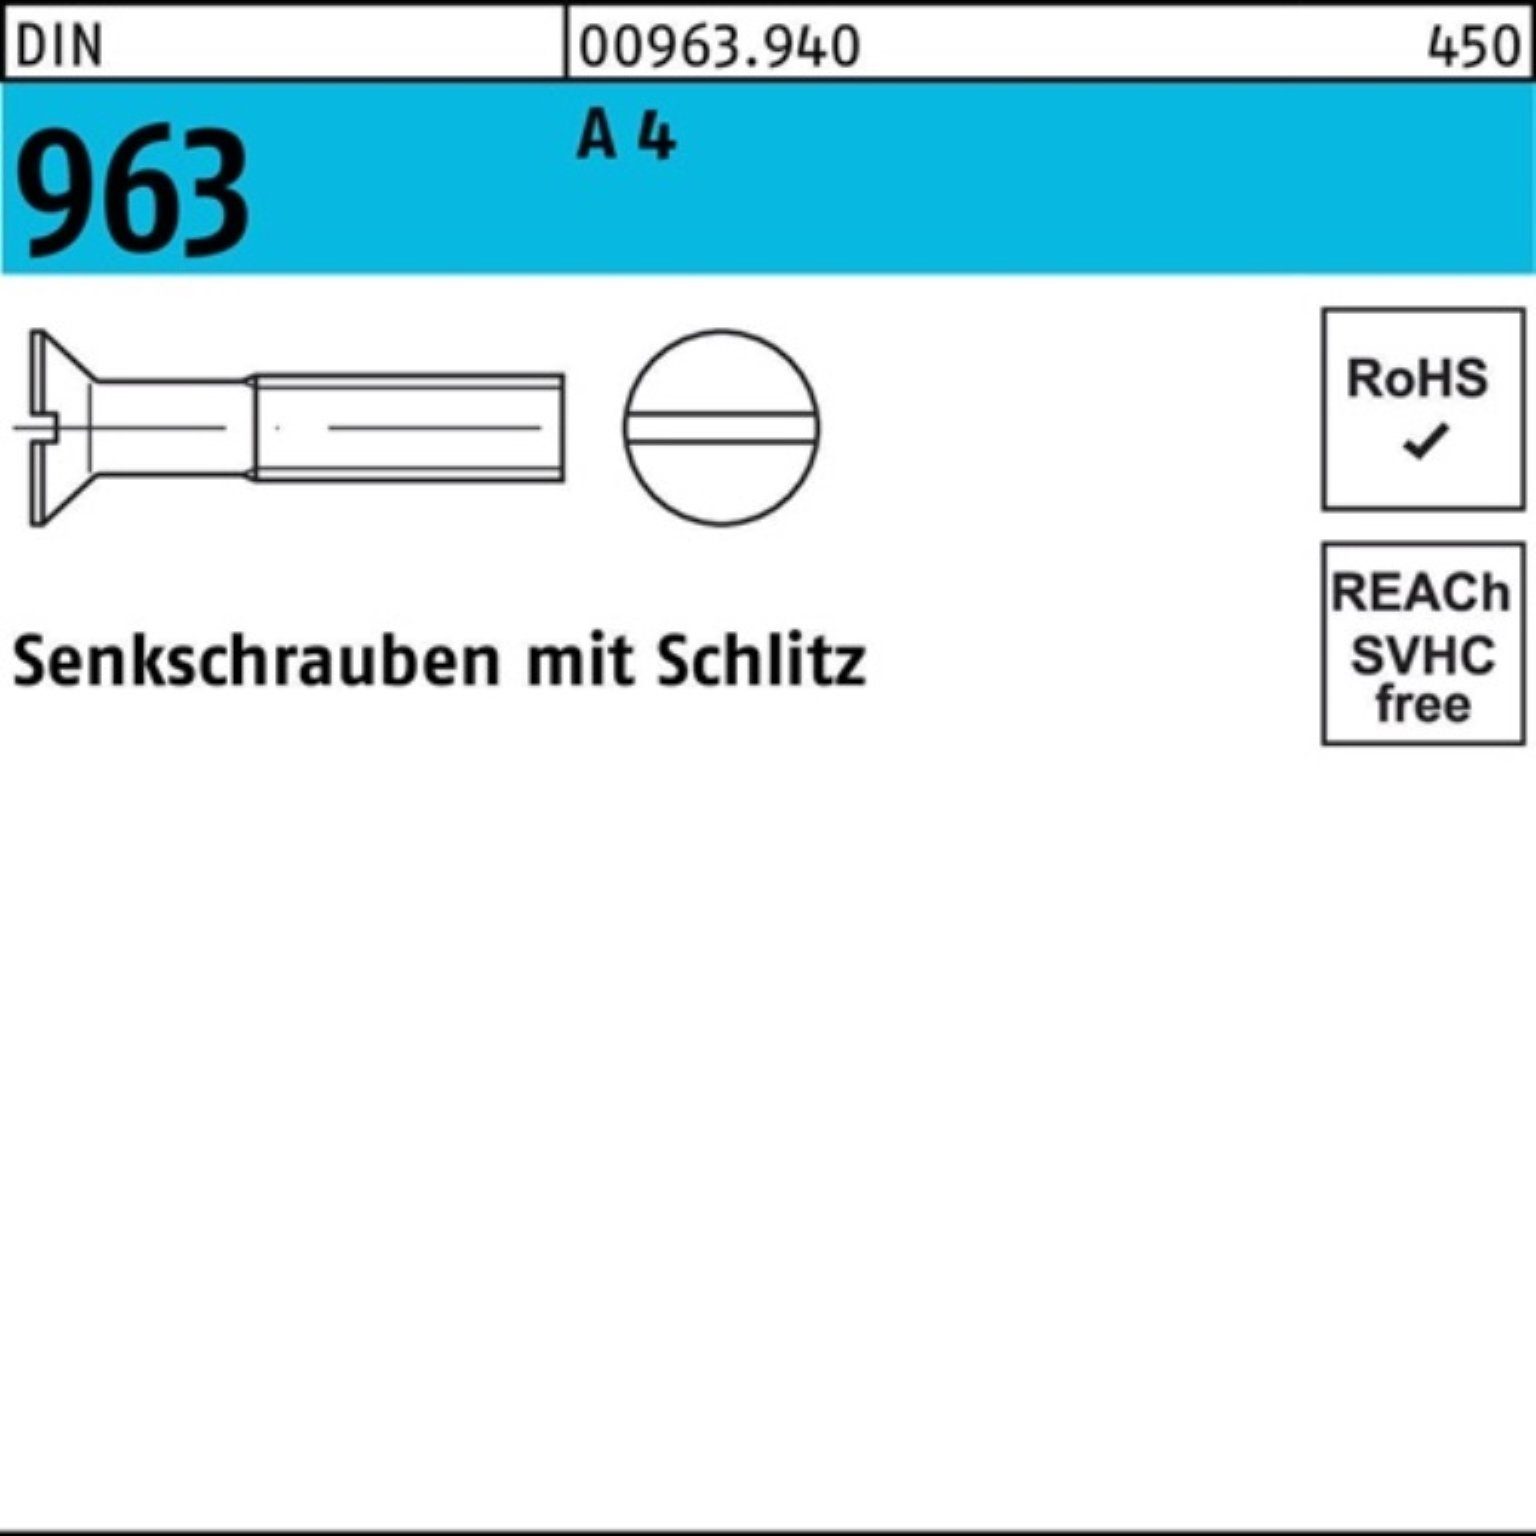 Reyher Senkschraube M12x 50 Senkschraube Schlitz DIN Pack 963 Stück DIN 25 100er 963 4 A